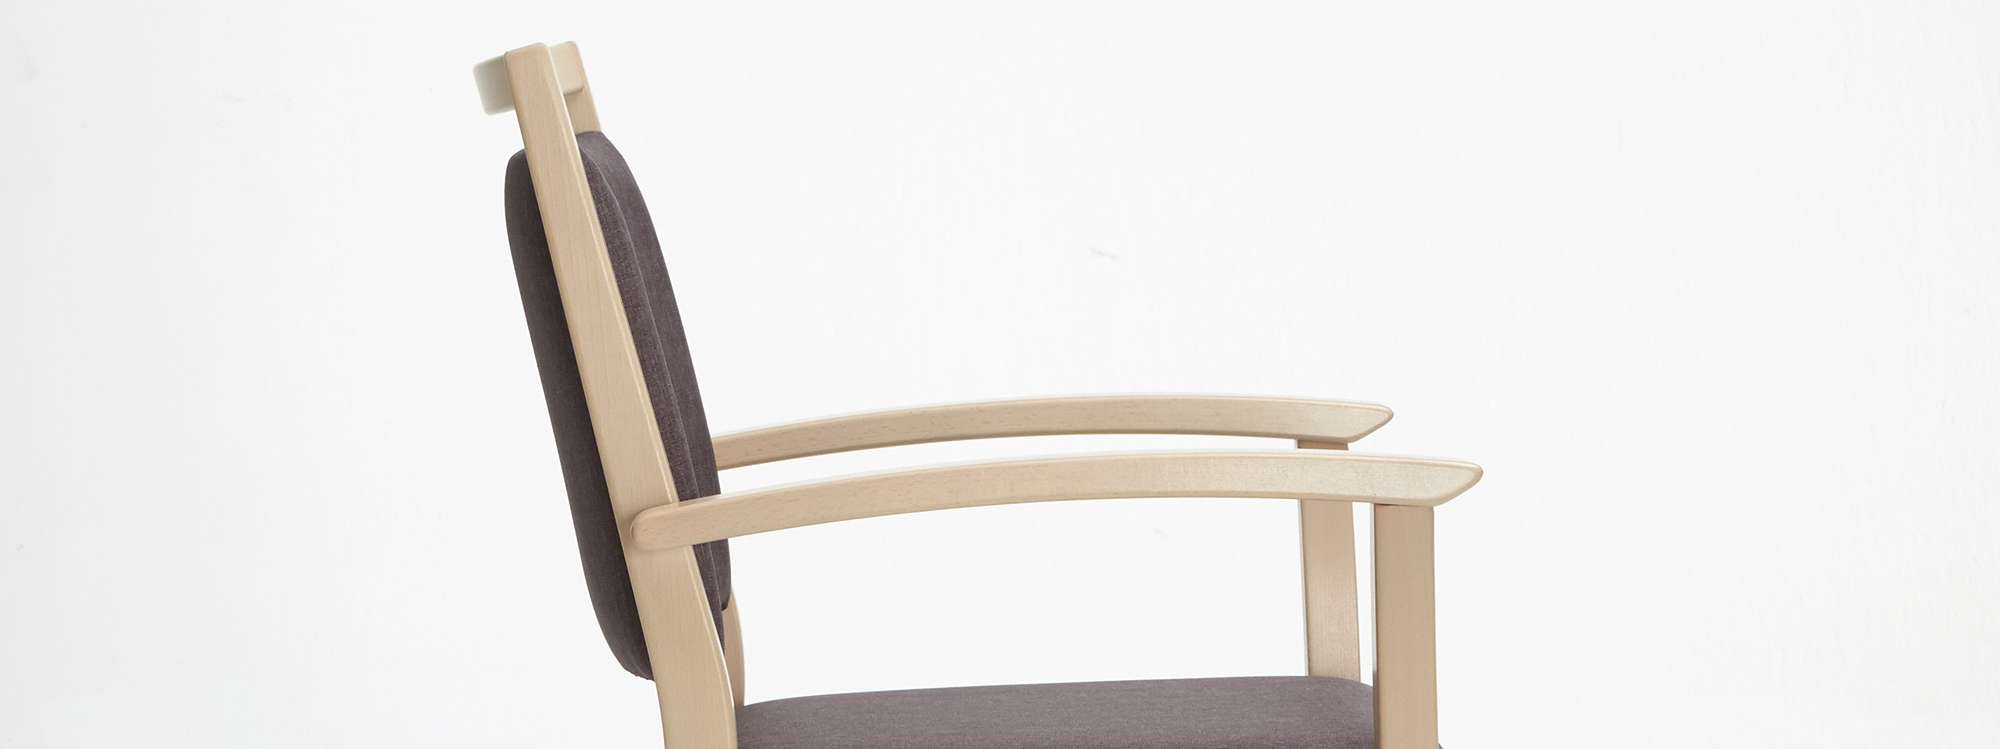 Model Mavo jako krzesło sztaplowane, z podłokietnikami